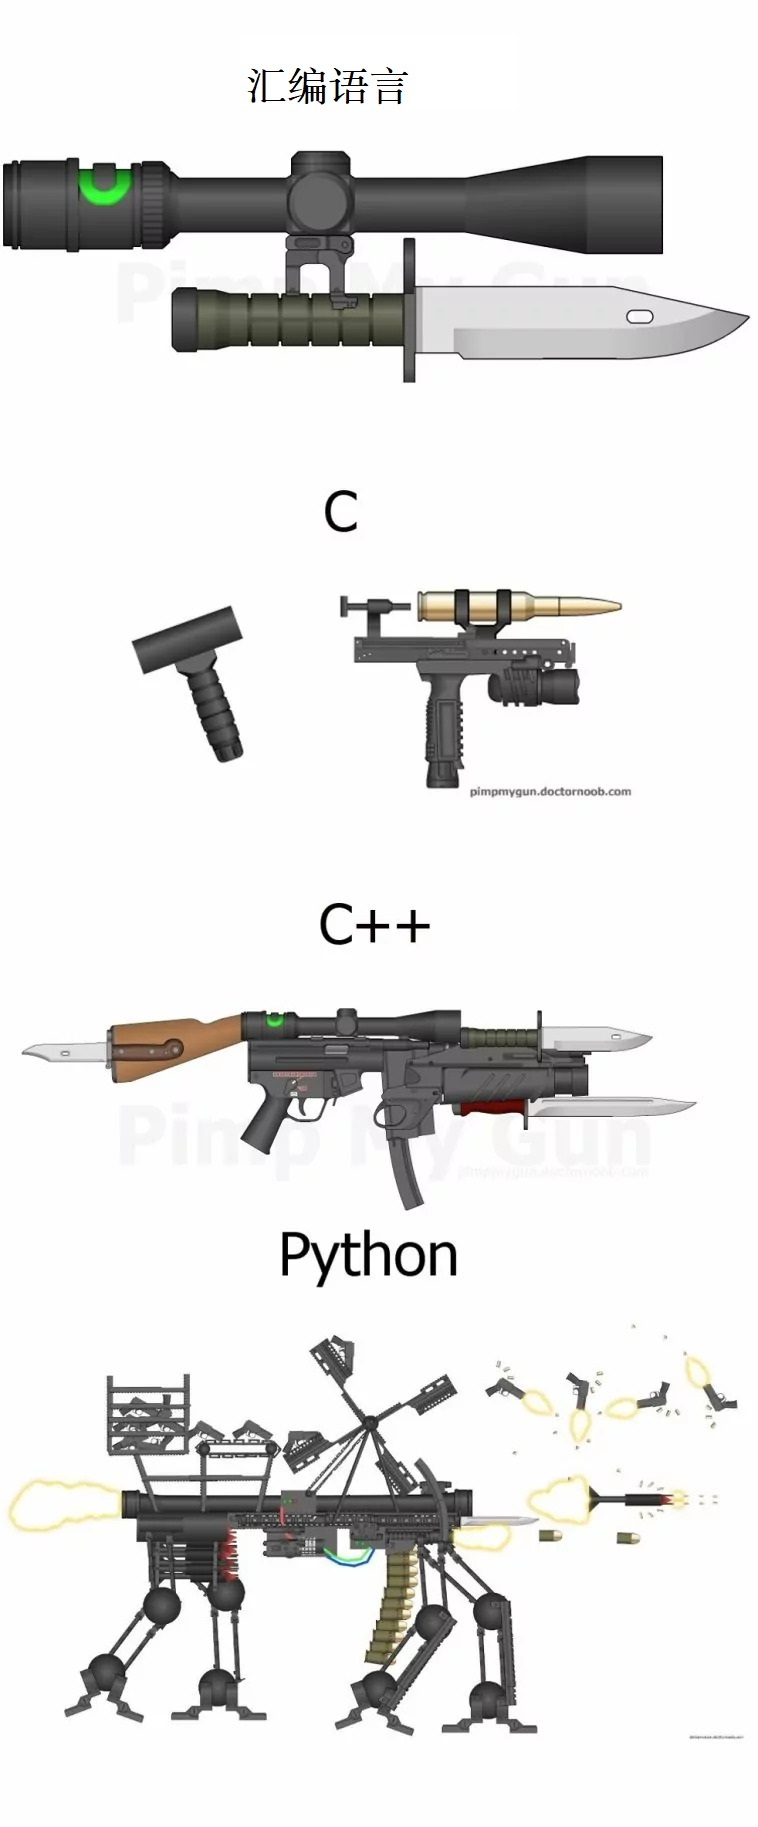 公司大佬用一张图让我明白为什么要学习Python